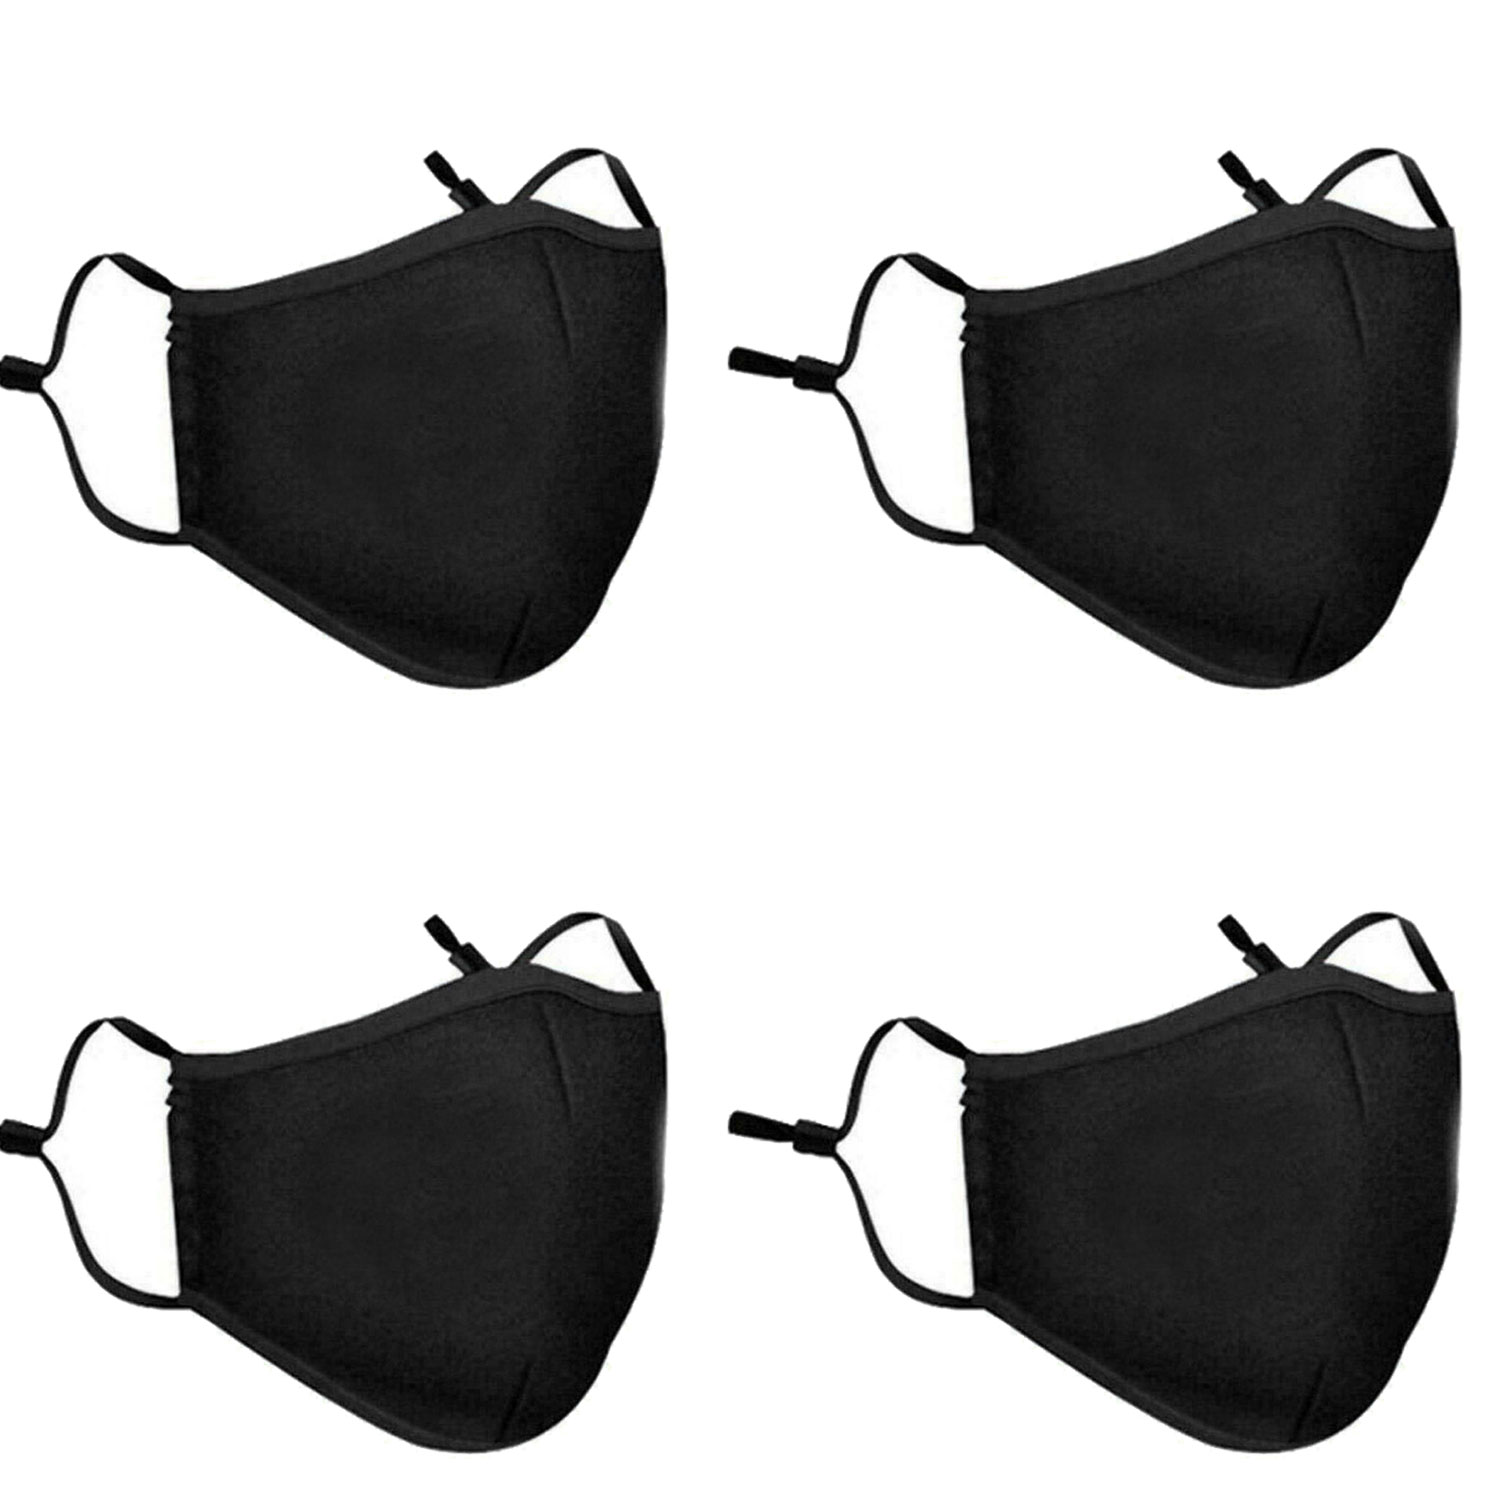 Washable Face Mask Black Reusable Breathable Unisex Double Layer Cotton